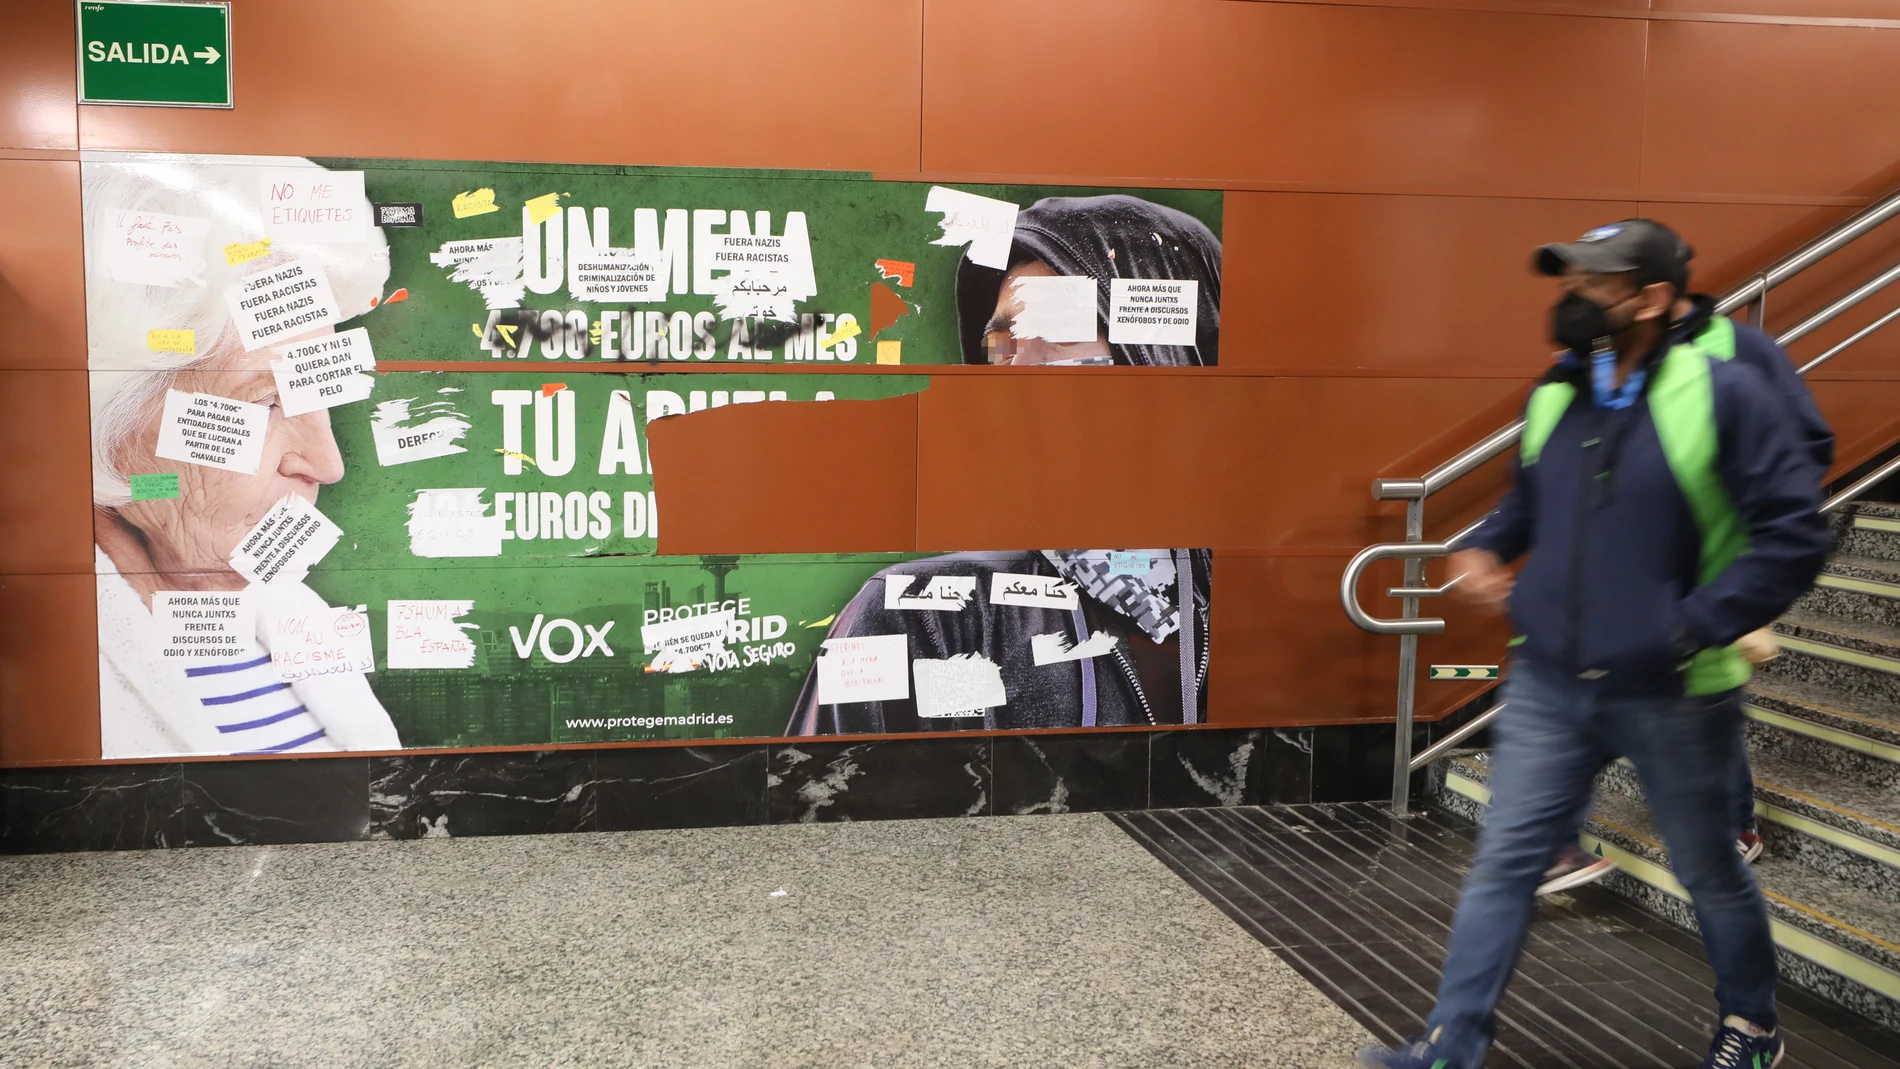 El polémico cartel electoral de Vox en el metro de Madrid que la Fiscalía pide que se retire de forma cautelar